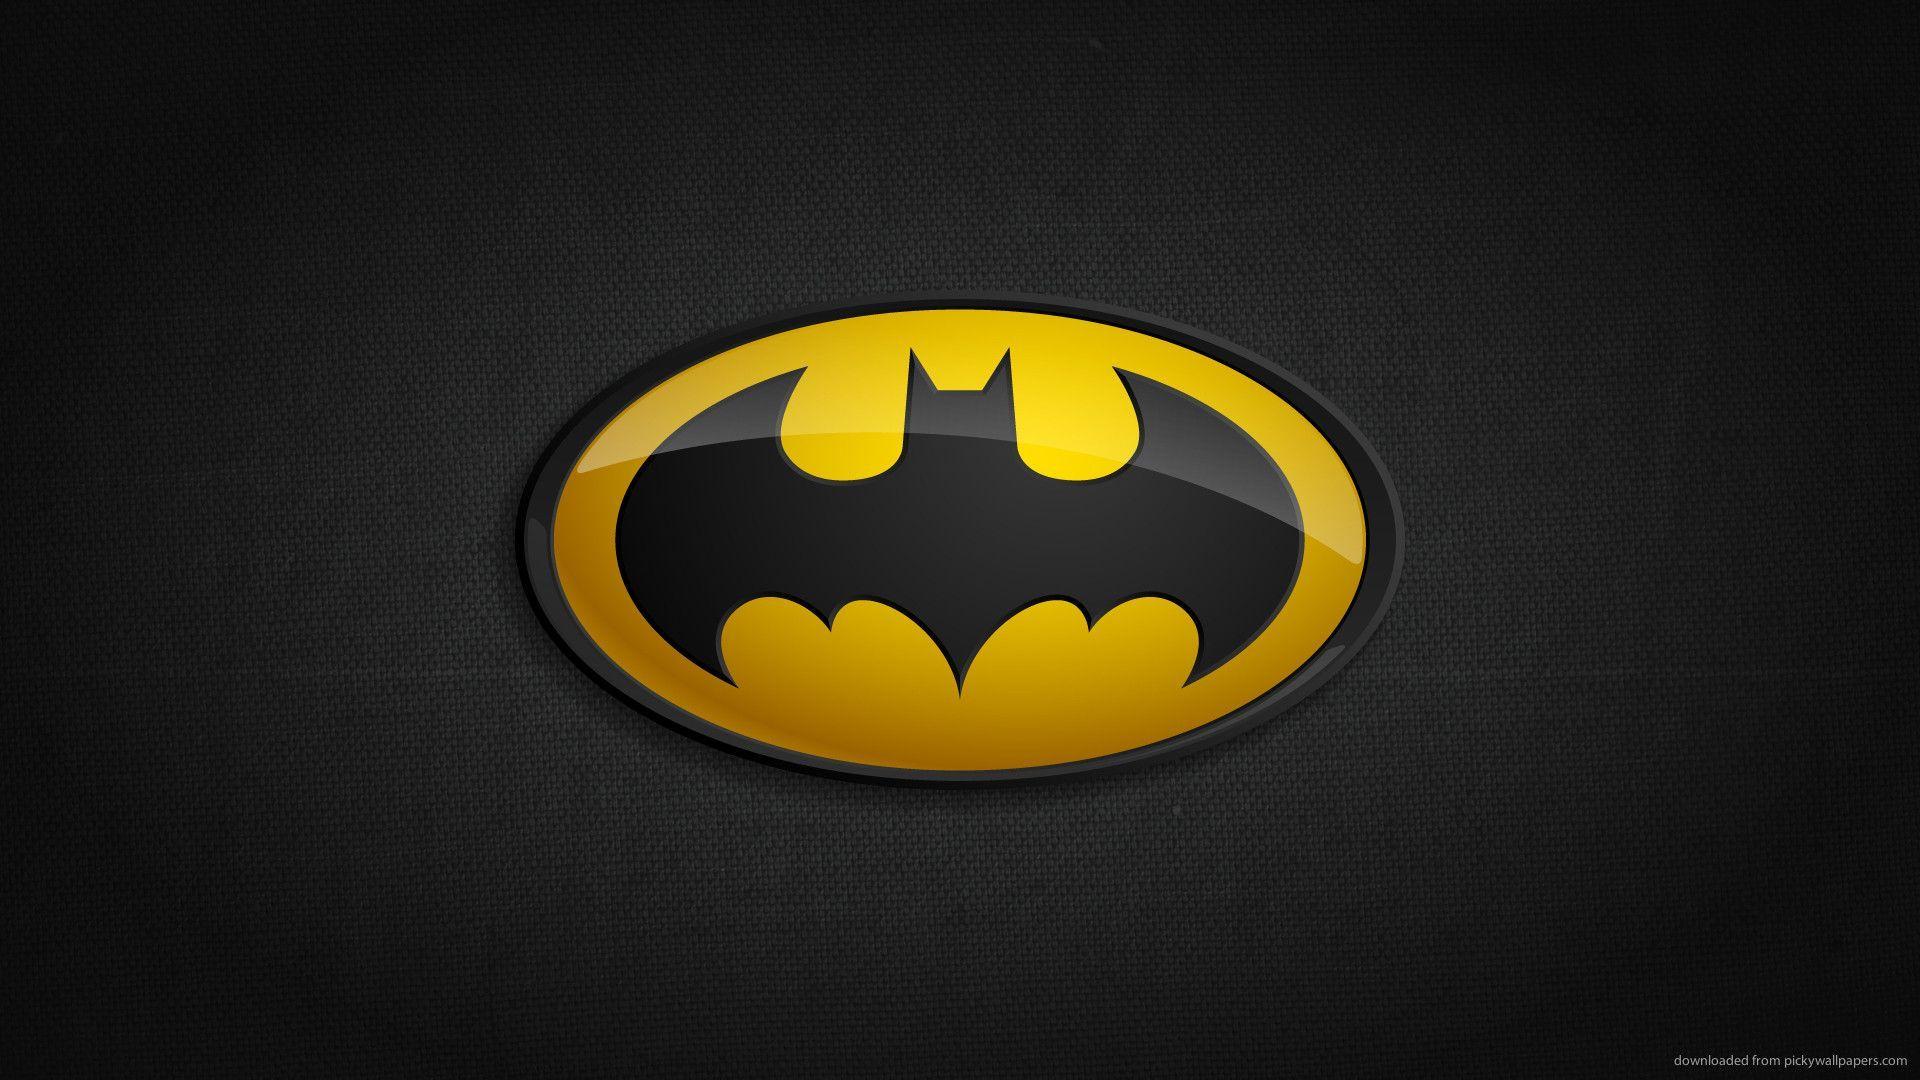 Download 1920x1080 Batman Classic Logo Wallpaper